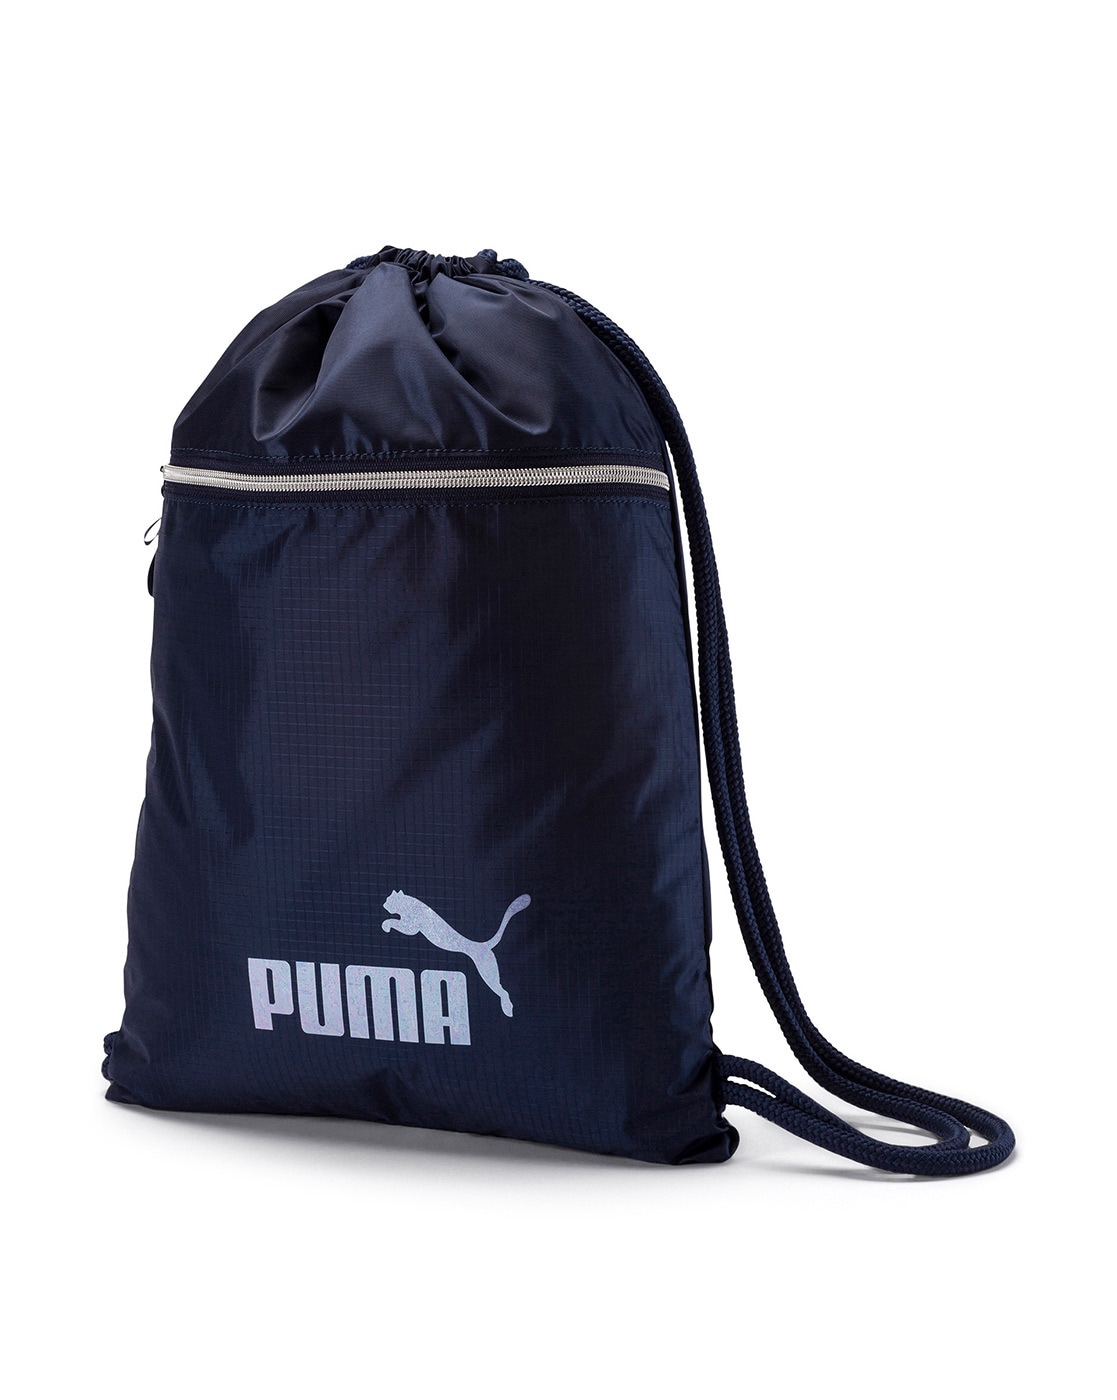 cheap puma gym bags